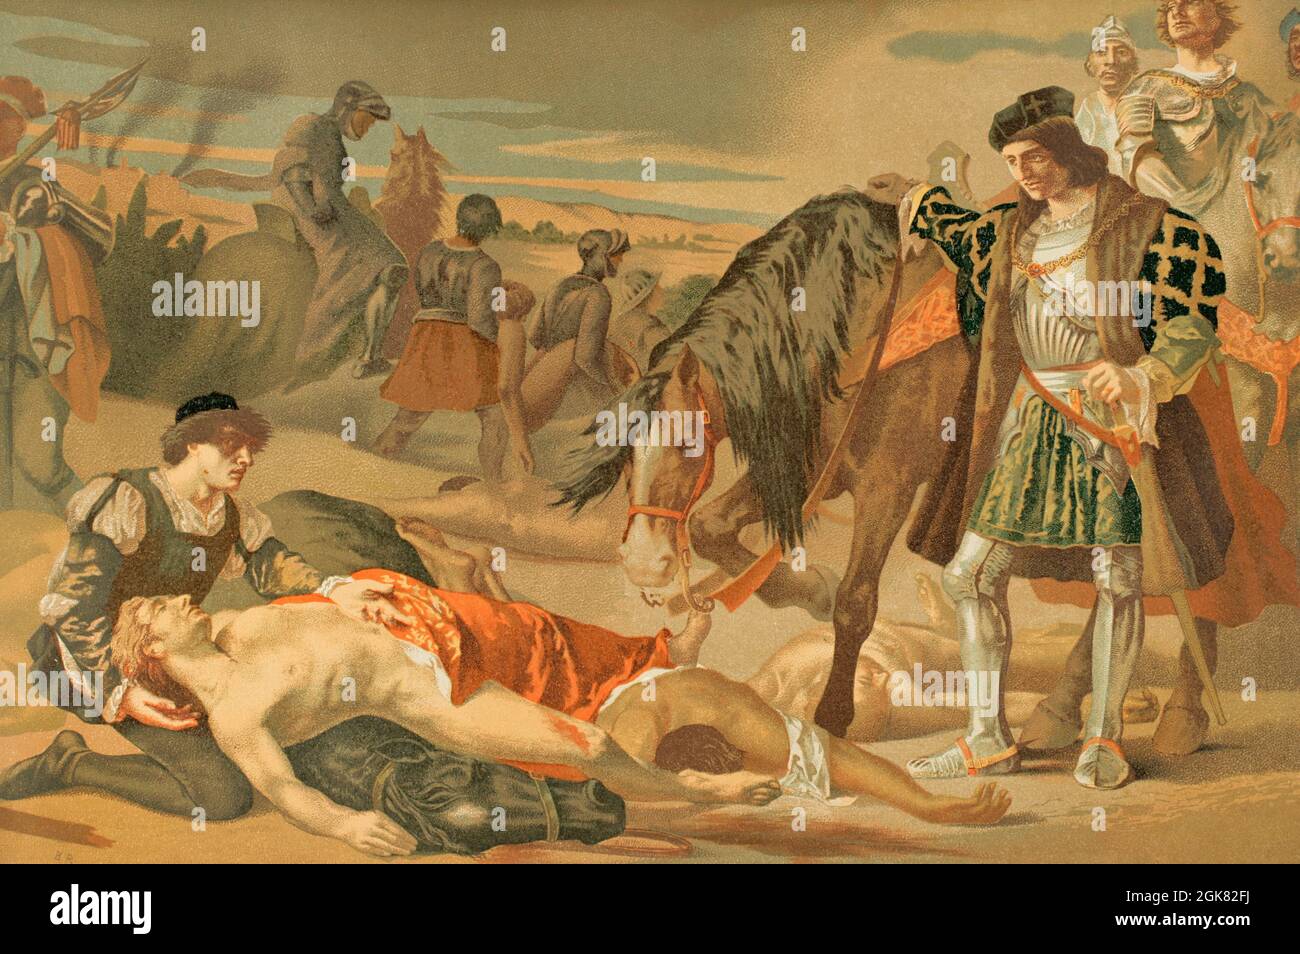 Seconde guerre italienne (1499-1504). Lutte entre l'Empire espagnol et le royaume de France. L'armée espagnole a été envoyée en Italie par les monarques catholiques dans le but de récupérer le royaume de Naples, saisi par la France de l'Espagne. Gonzalo Fernández de Córdoba 'le grand capitaine' (1453-1515) avant le cadavre de Louis d'Armagnac (1472-1503), Duc de Nemours, est mort au combat pendant la bataille de Ceriñola, 1503. Illustration, copie de la peinture 'les deux caudillos' de Casado del Alisal. Chromolithography. Historia général de España (Histoire générale de l'Espagne), par Miguel Morayta. Volume III Madrid, Banque D'Images